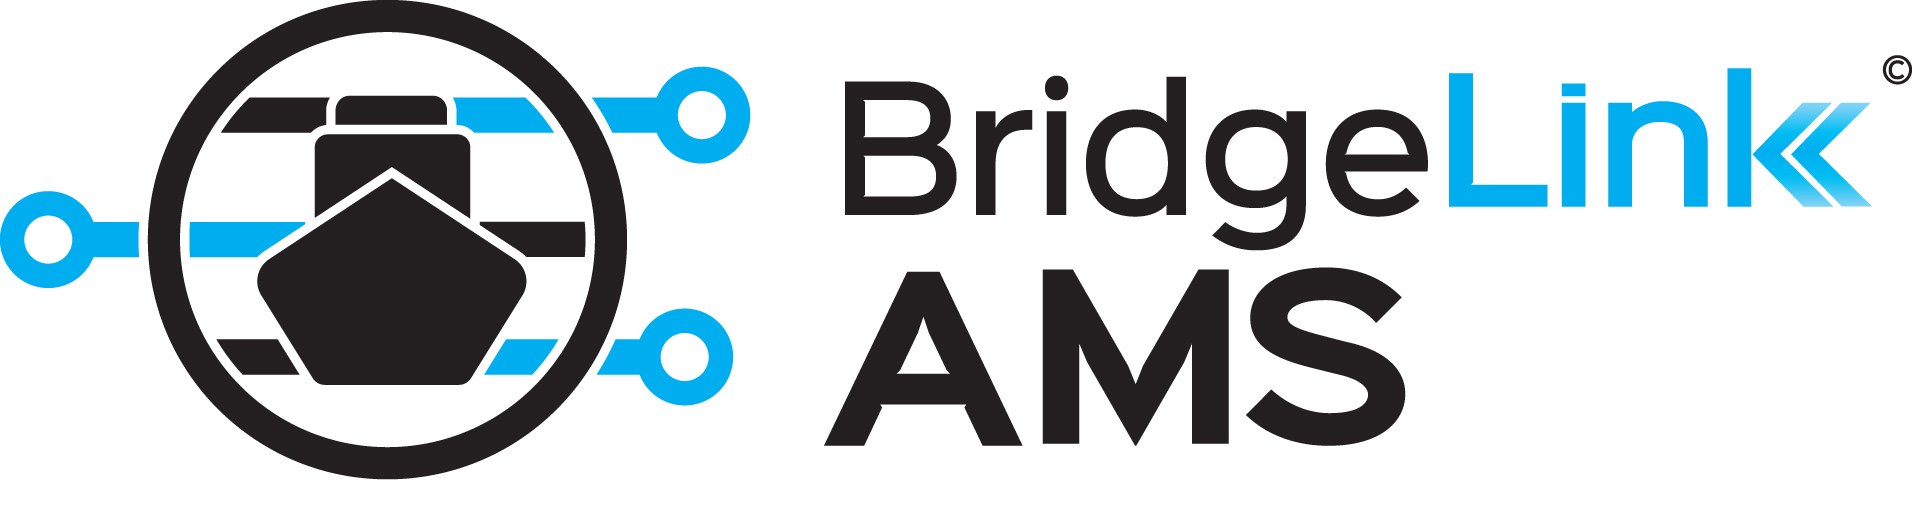 bridgelink ams logo